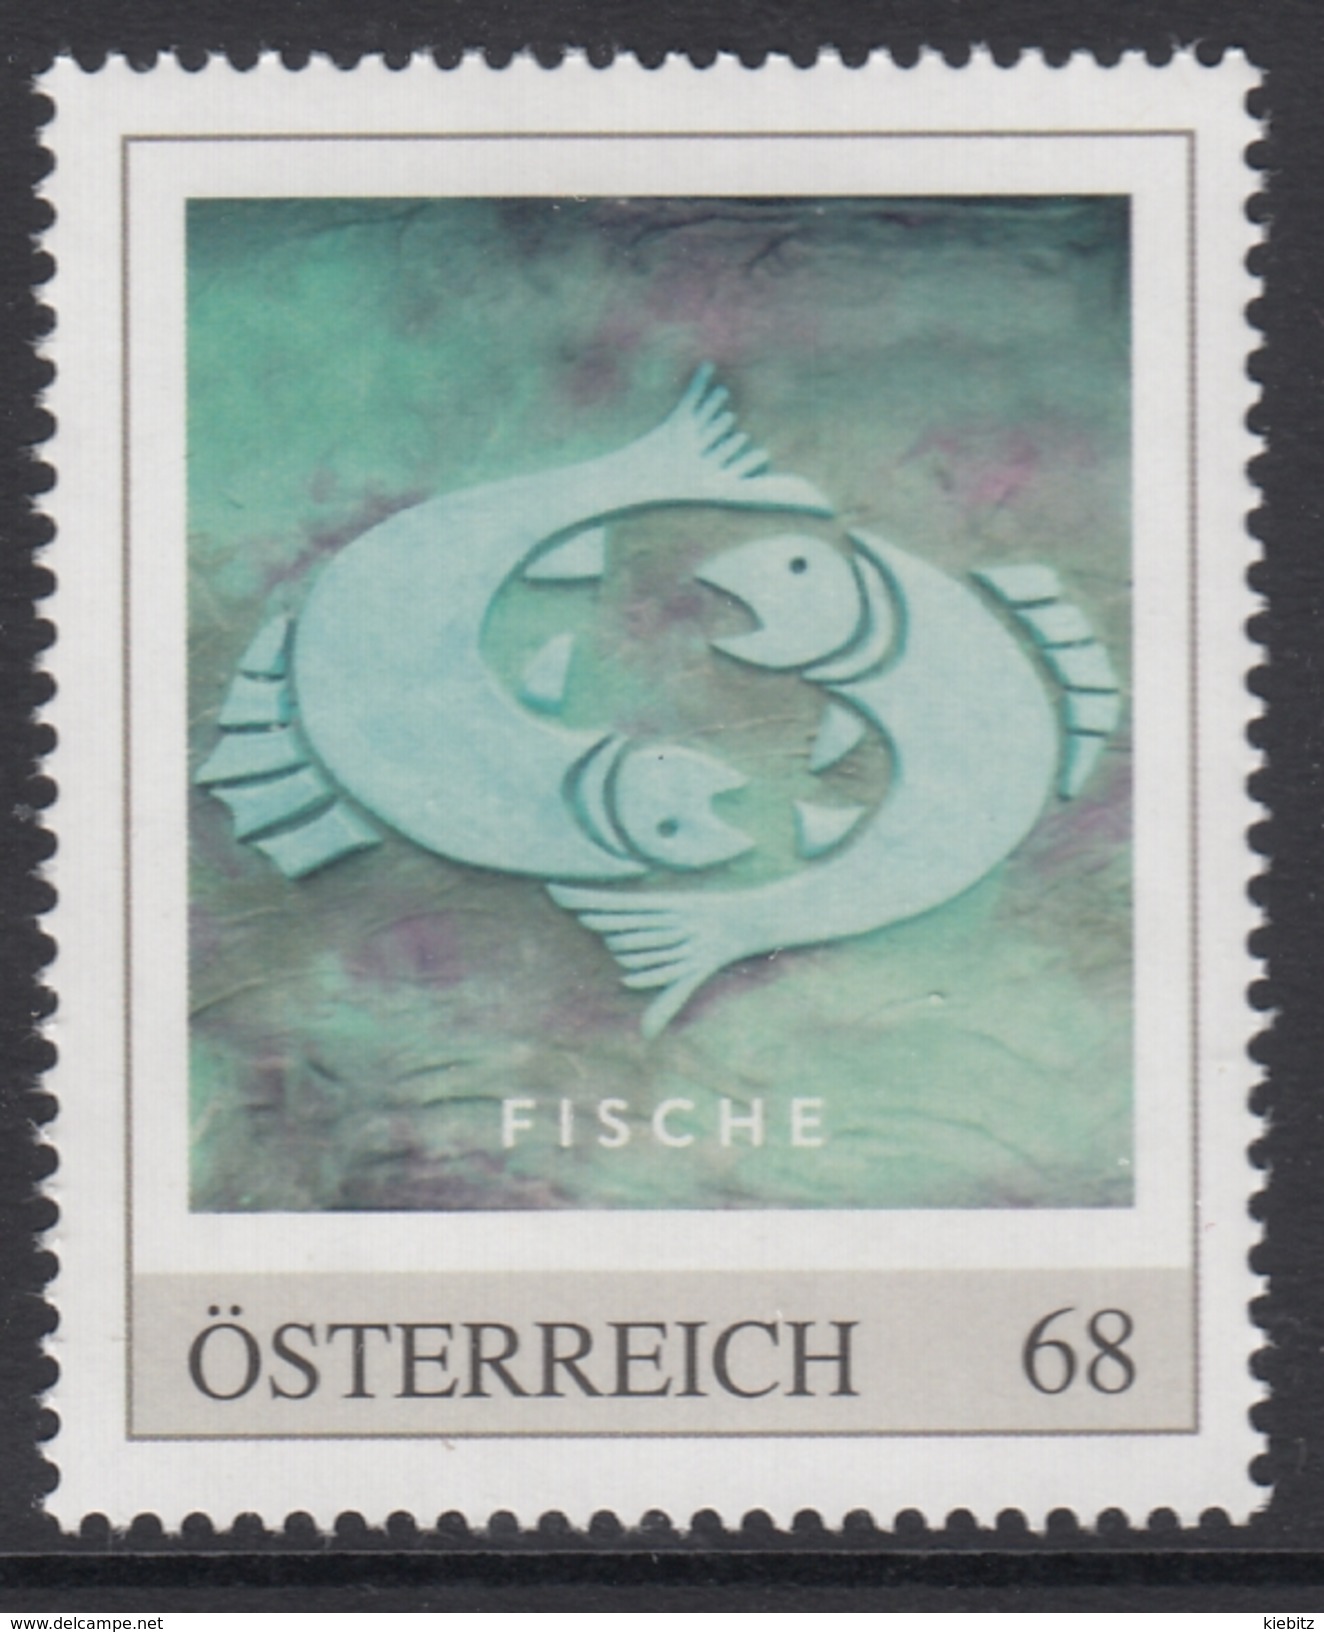 ÖSTERREICH 2016 ** Astrologie - FISCHE Sternzeichen - PM Personalized Stamp MNH - Astrologie